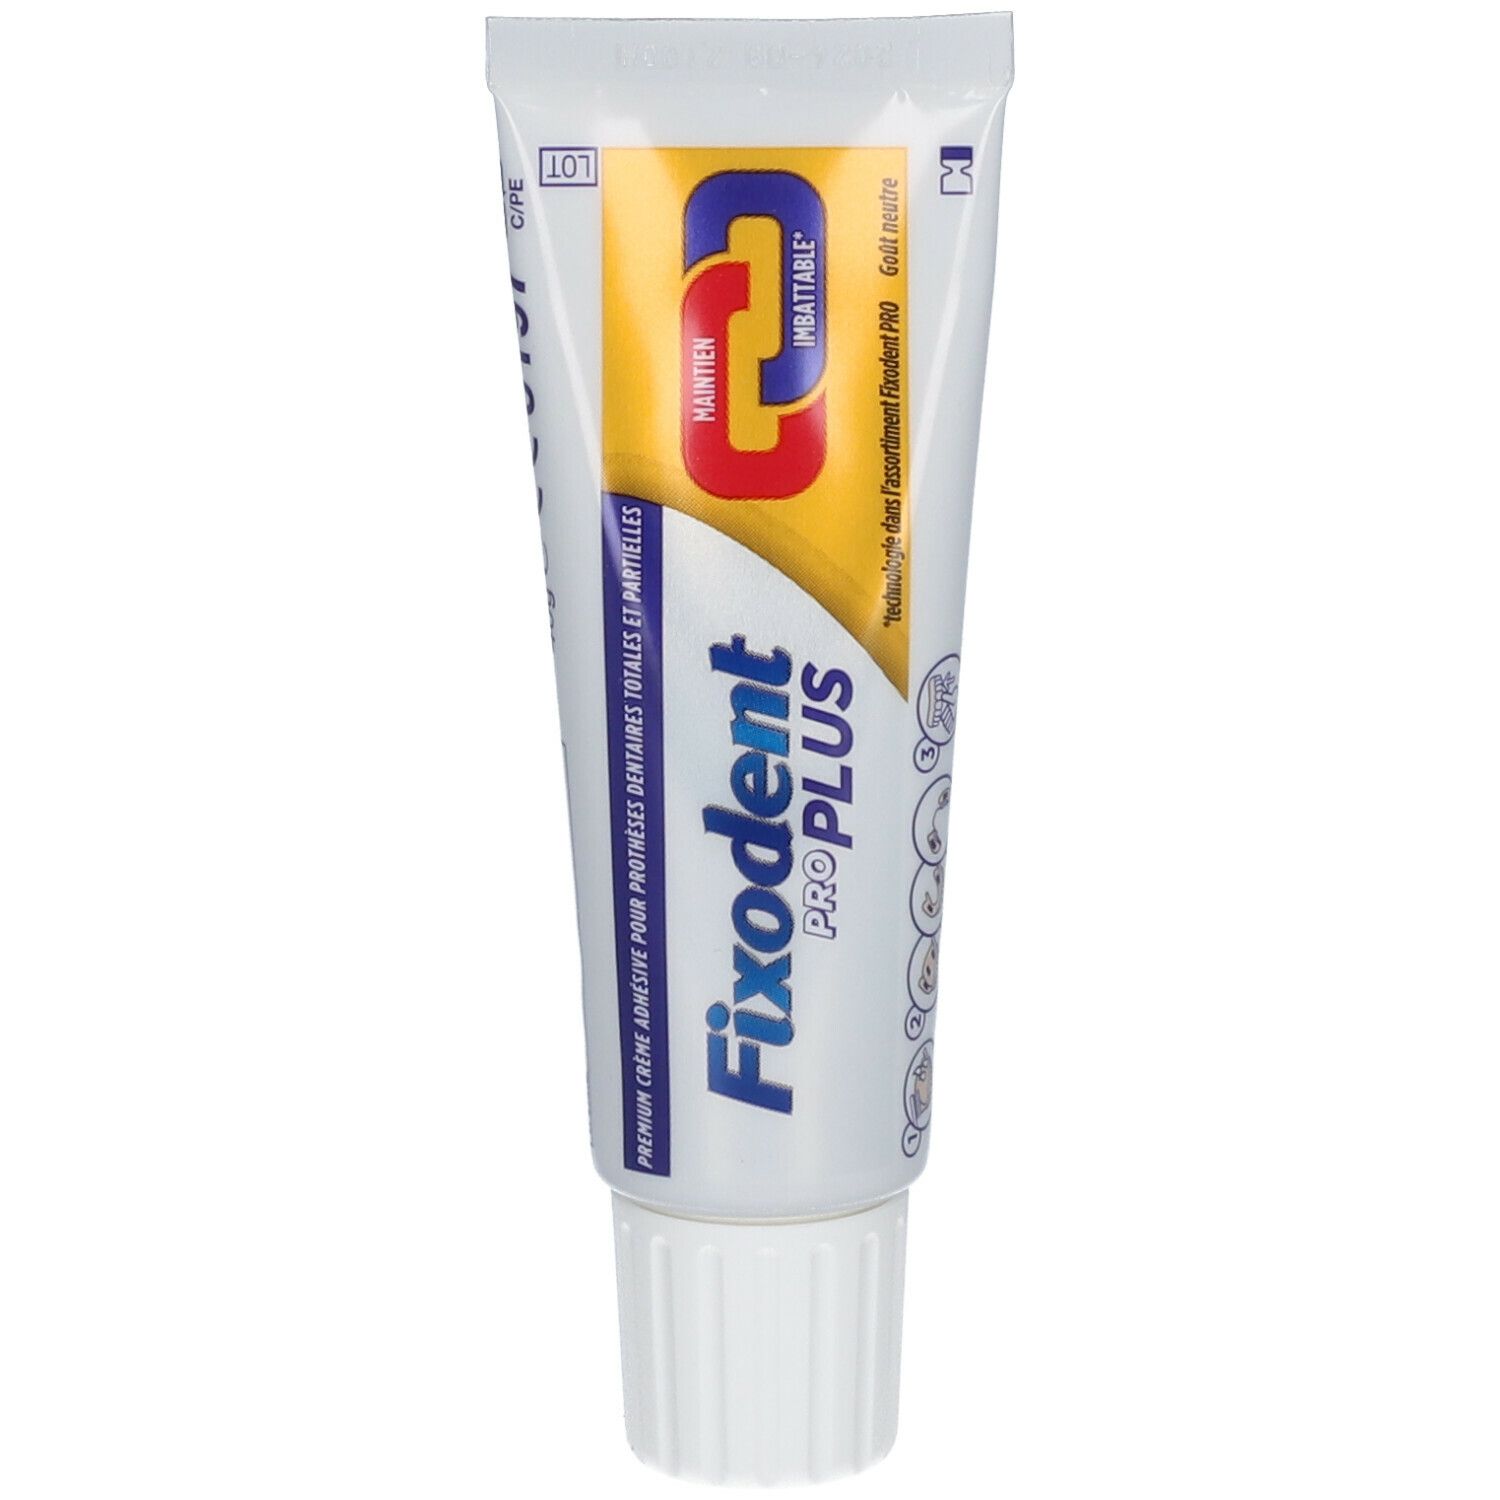 Fixodent Pro Plus Maintien Imbattable - Crème Adhésive Pour Prothèses Dentaires